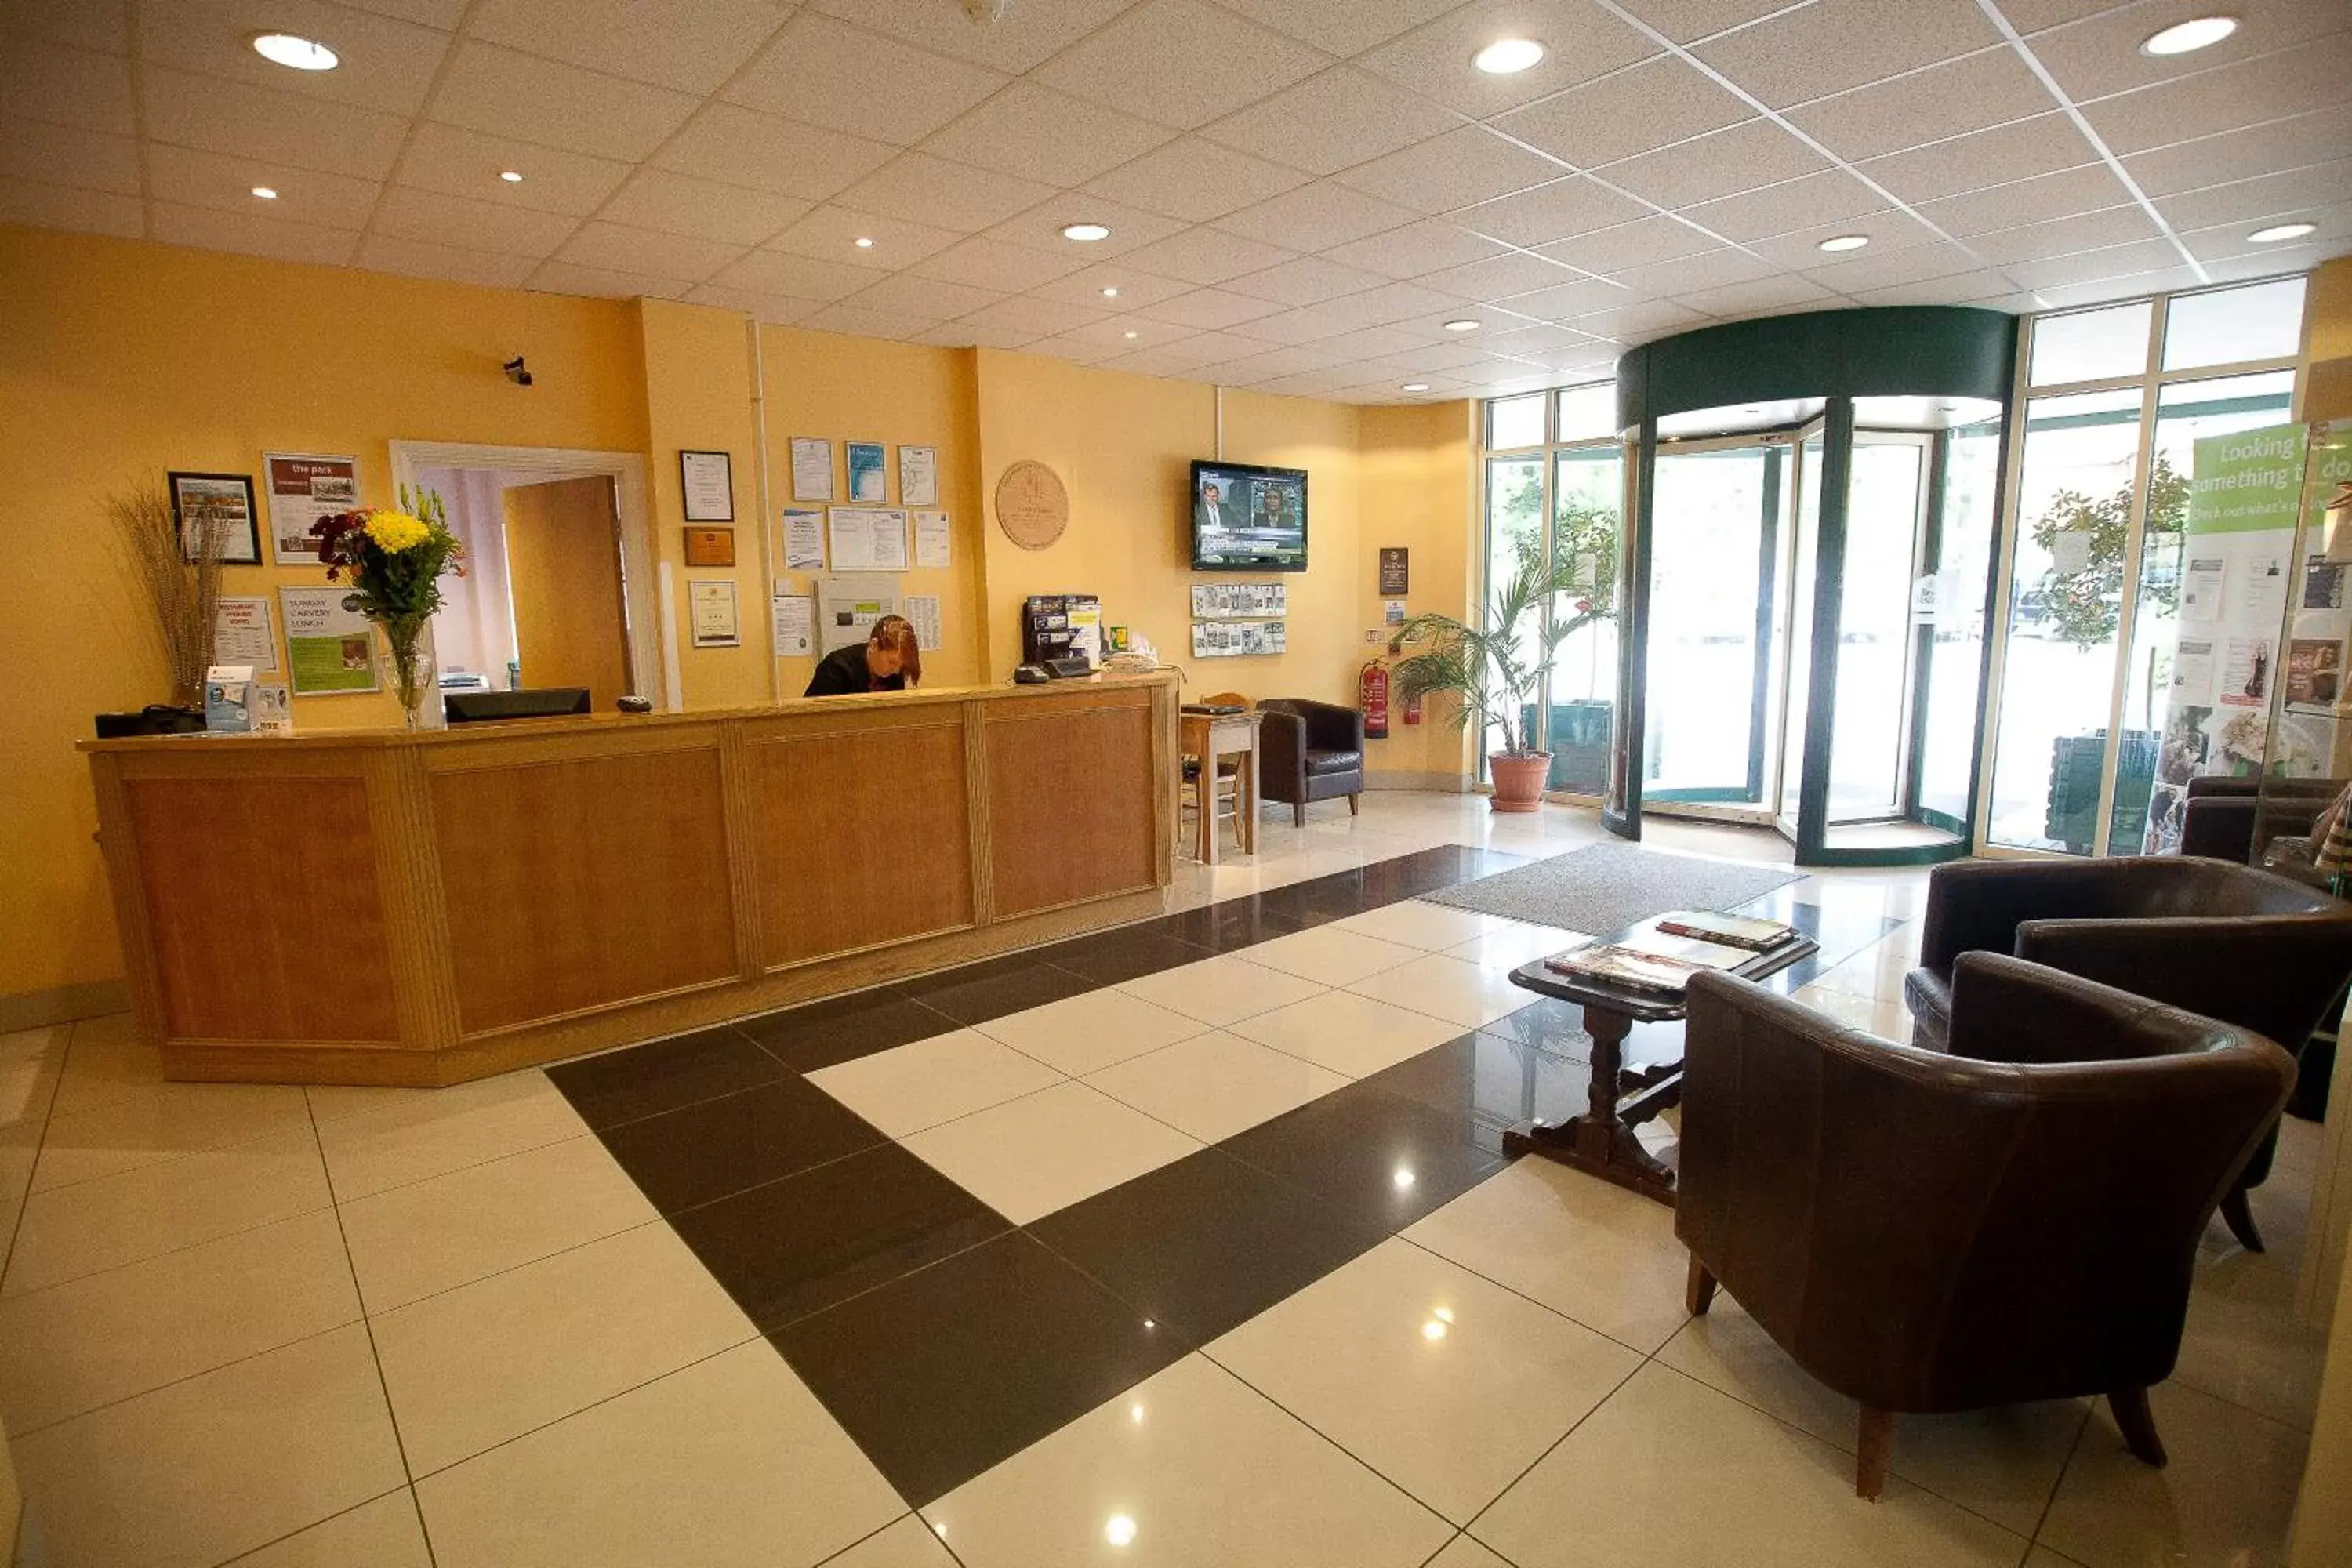 Lobby or reception, Lobby/Reception in Ufford Park Hotel, Golf & Spa